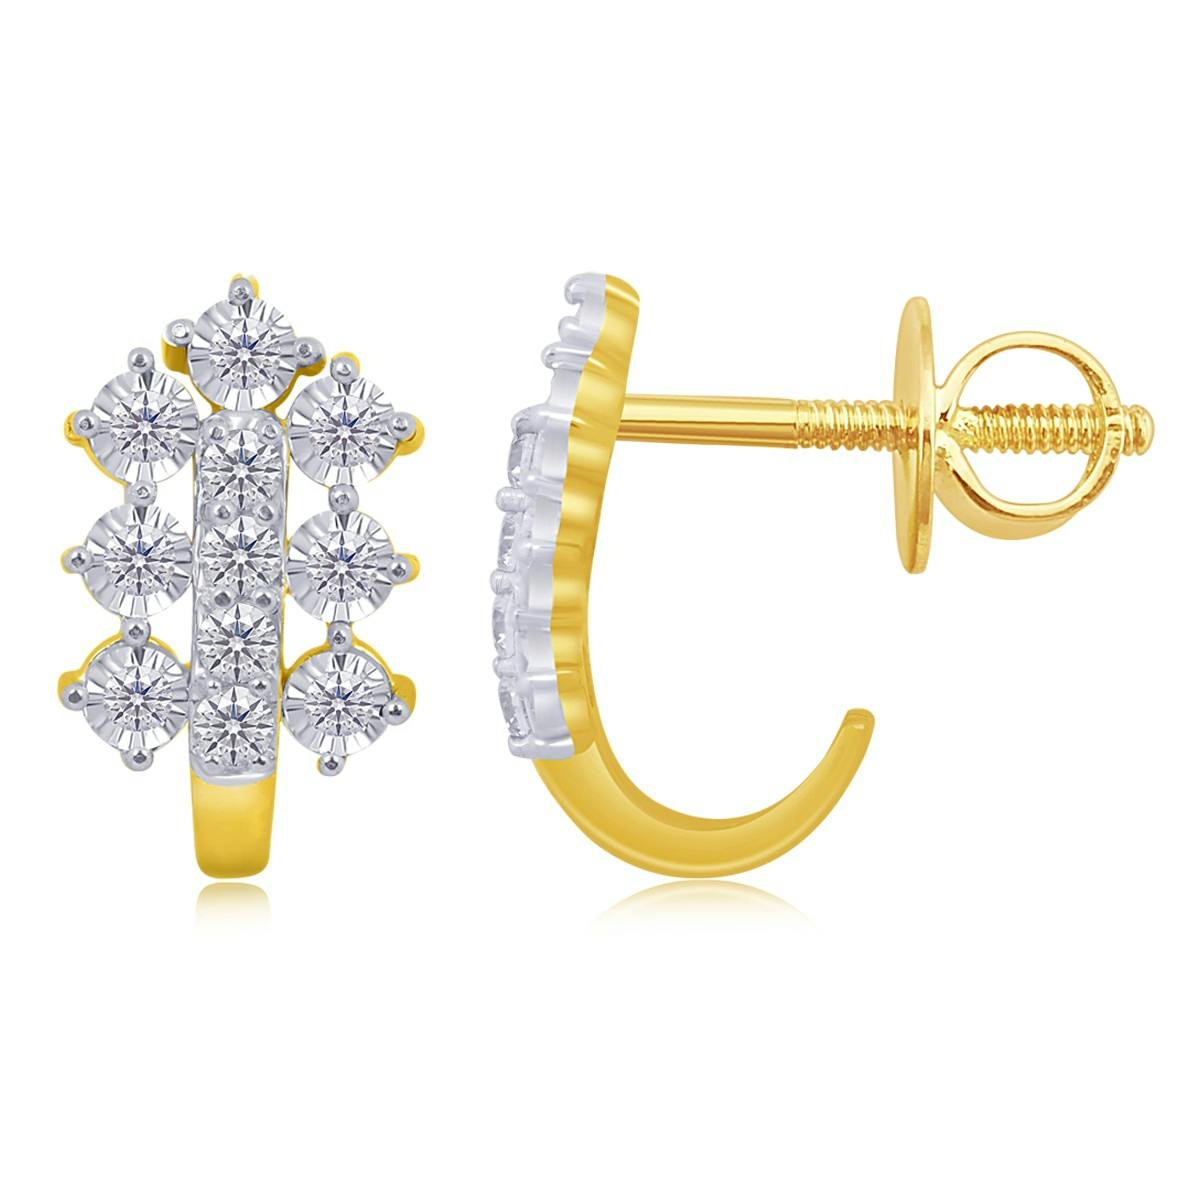 Yaretzi diamond earrings